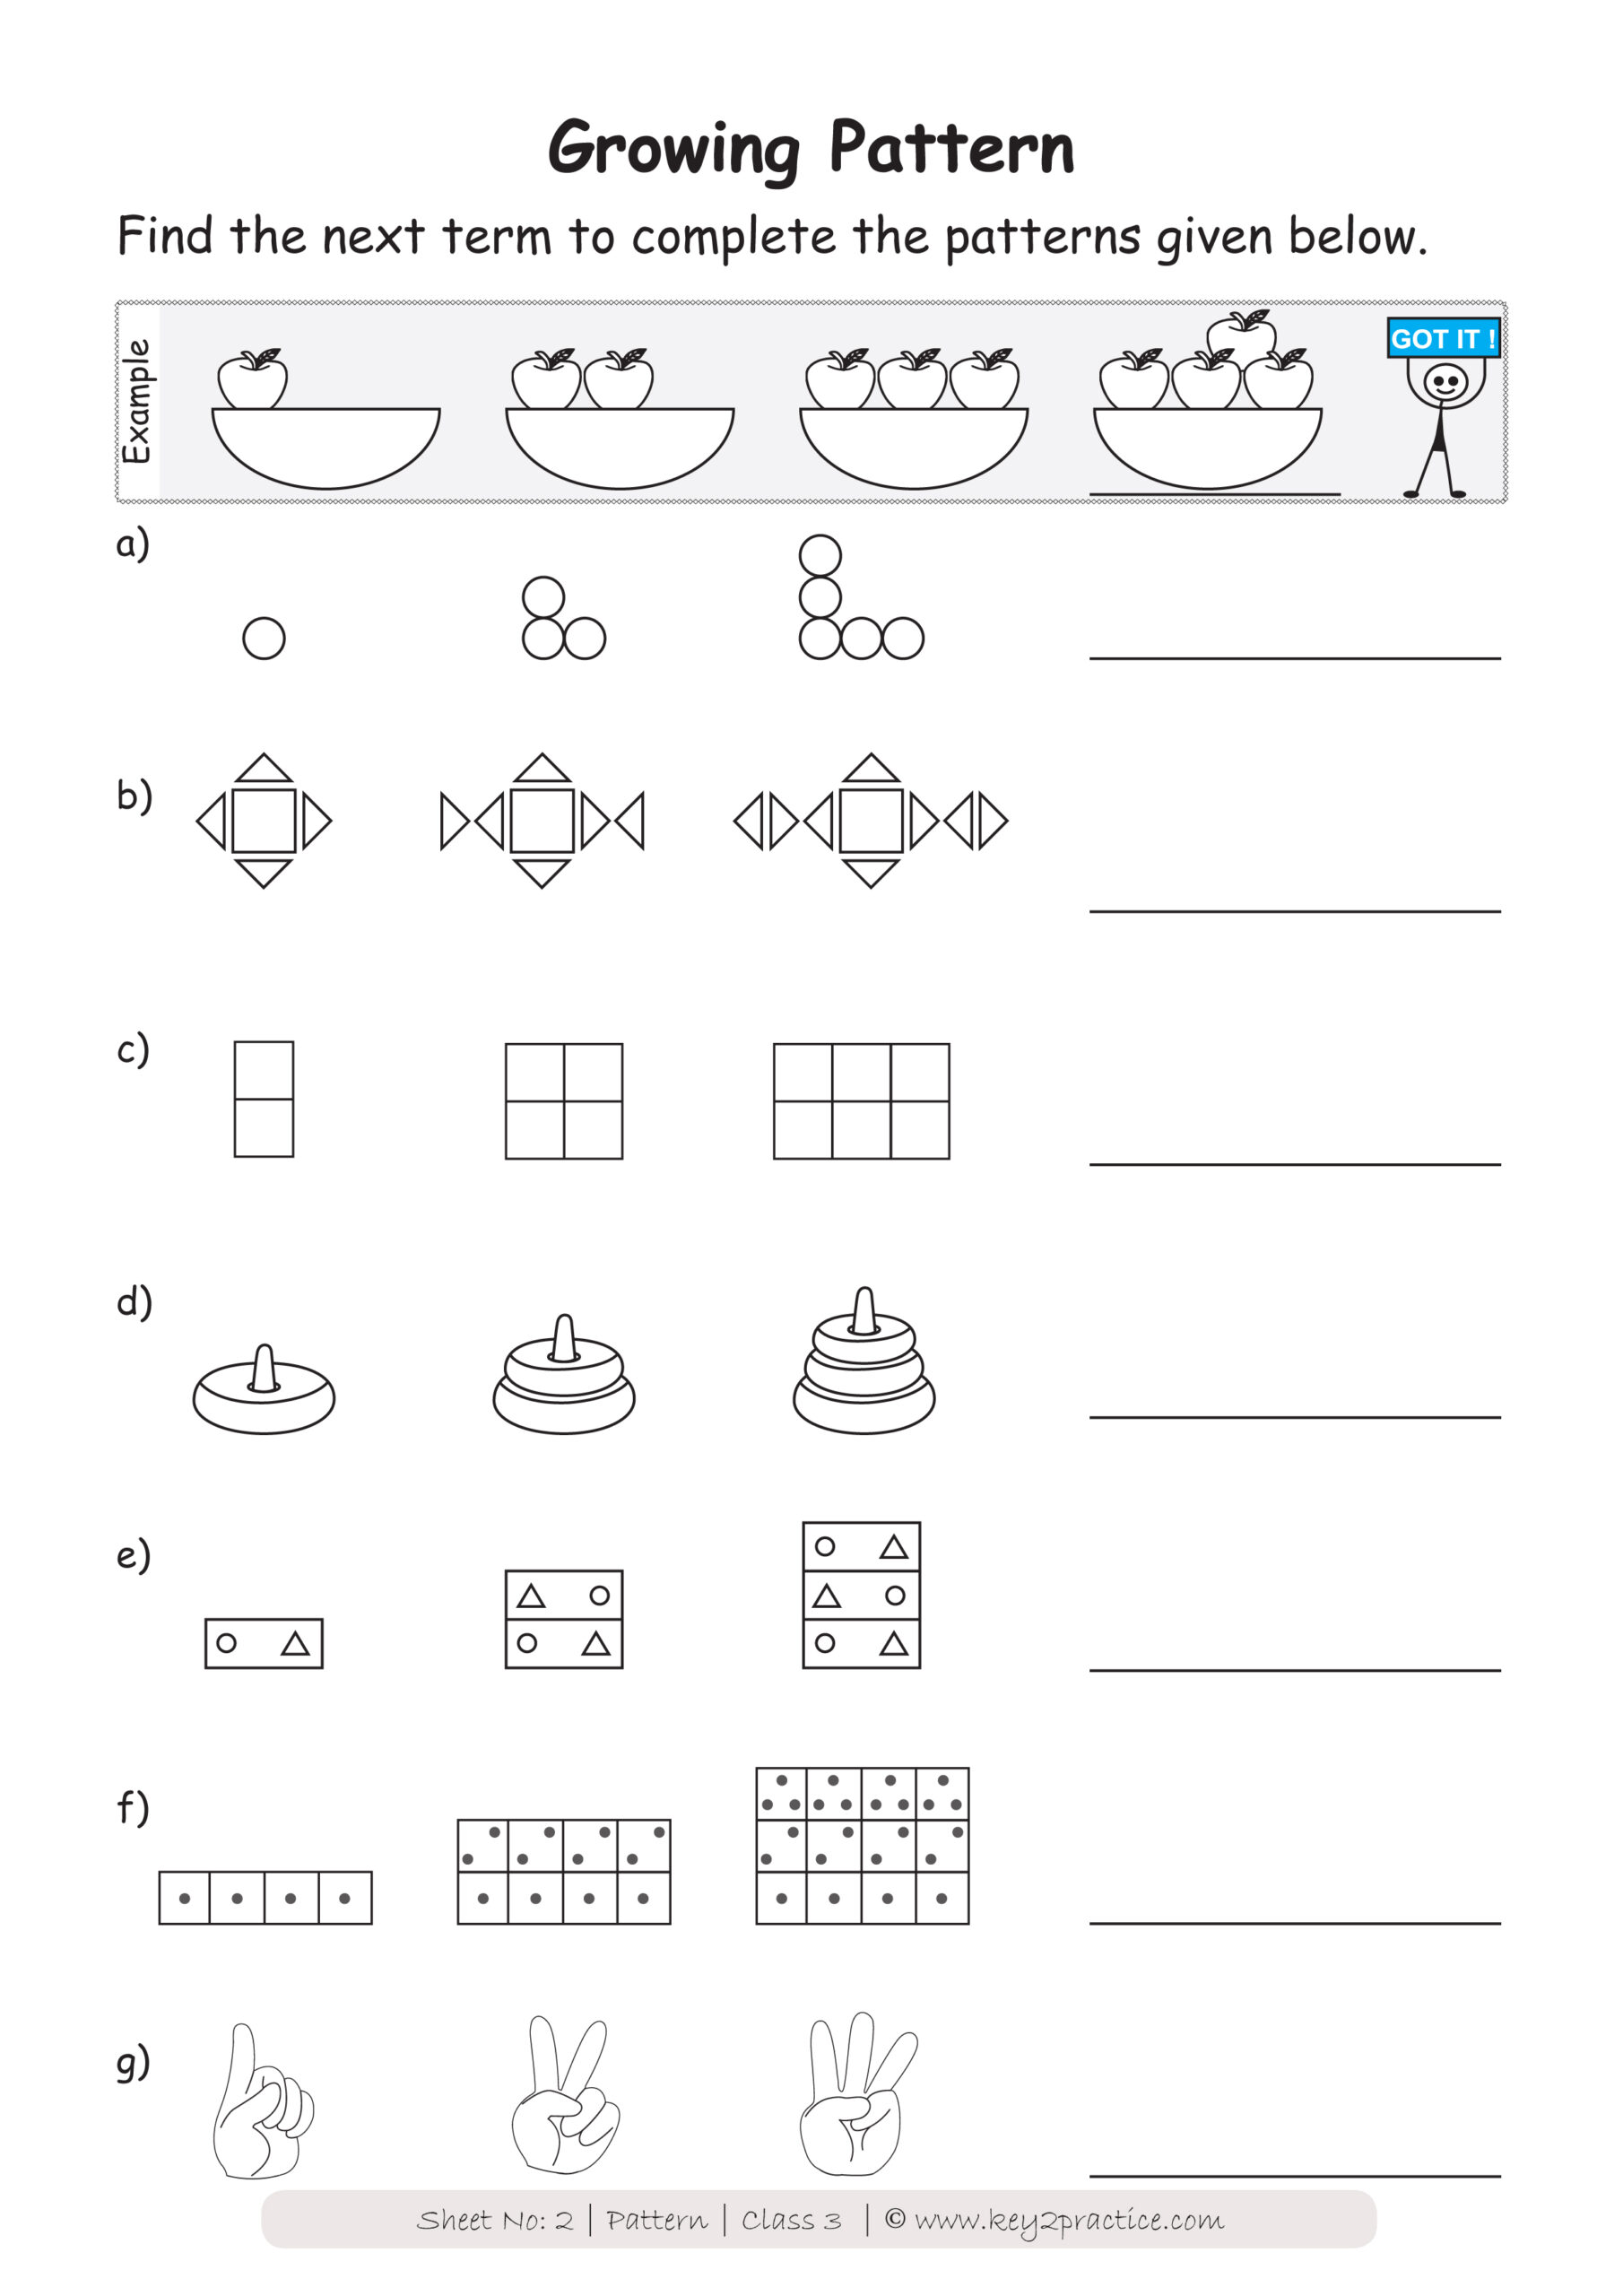 Grade 5 Number Patterns Worksheets Numbersworksheetcom Grade 5 Number Patterns Worksheets